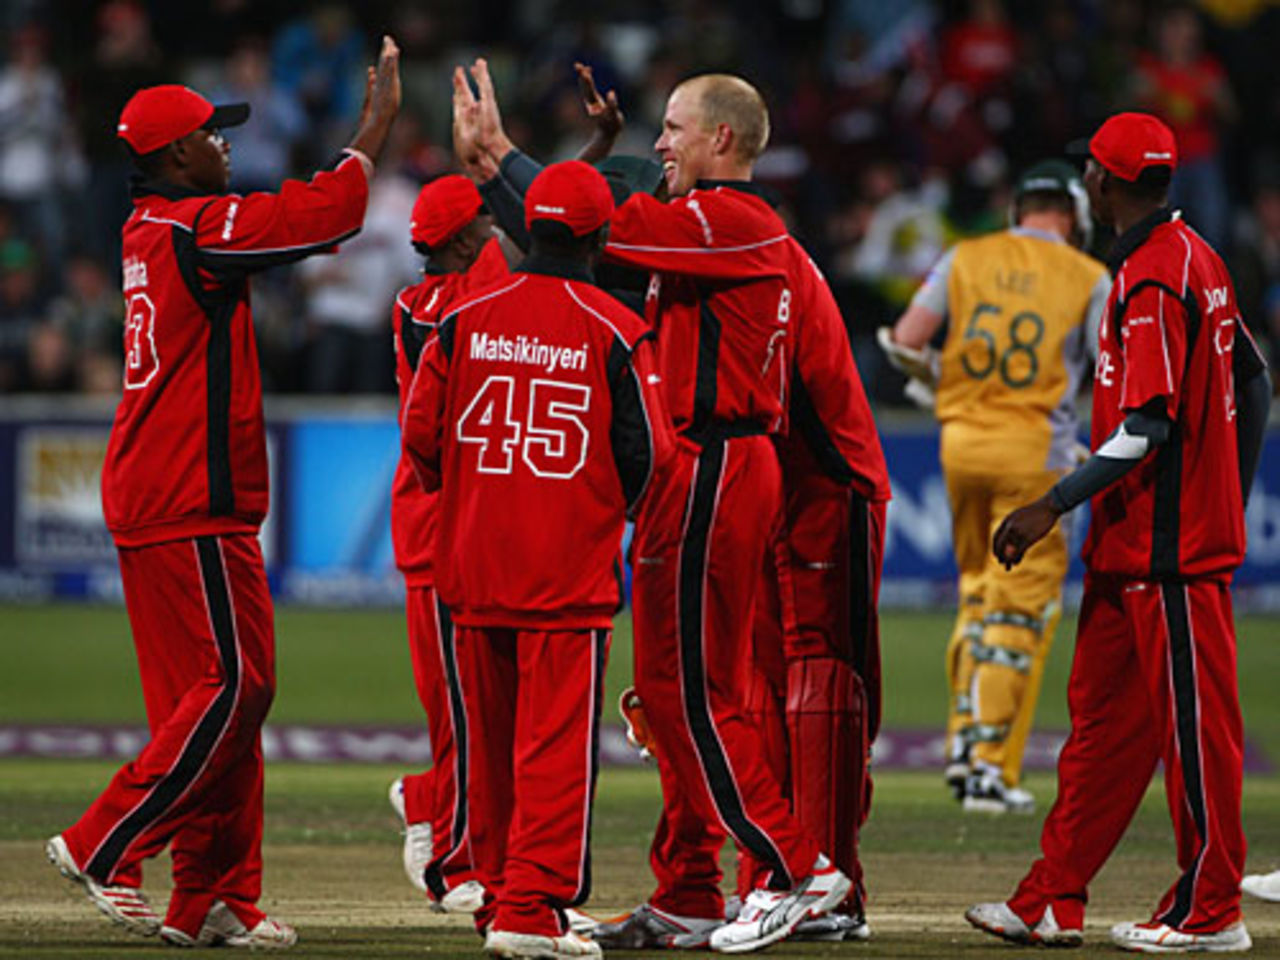 High fives for Gary Brent as Brett Lee heads off, Australia v Zimbabwe, Group B, ICC World Twenty20, Cape Town, September 12, 2007